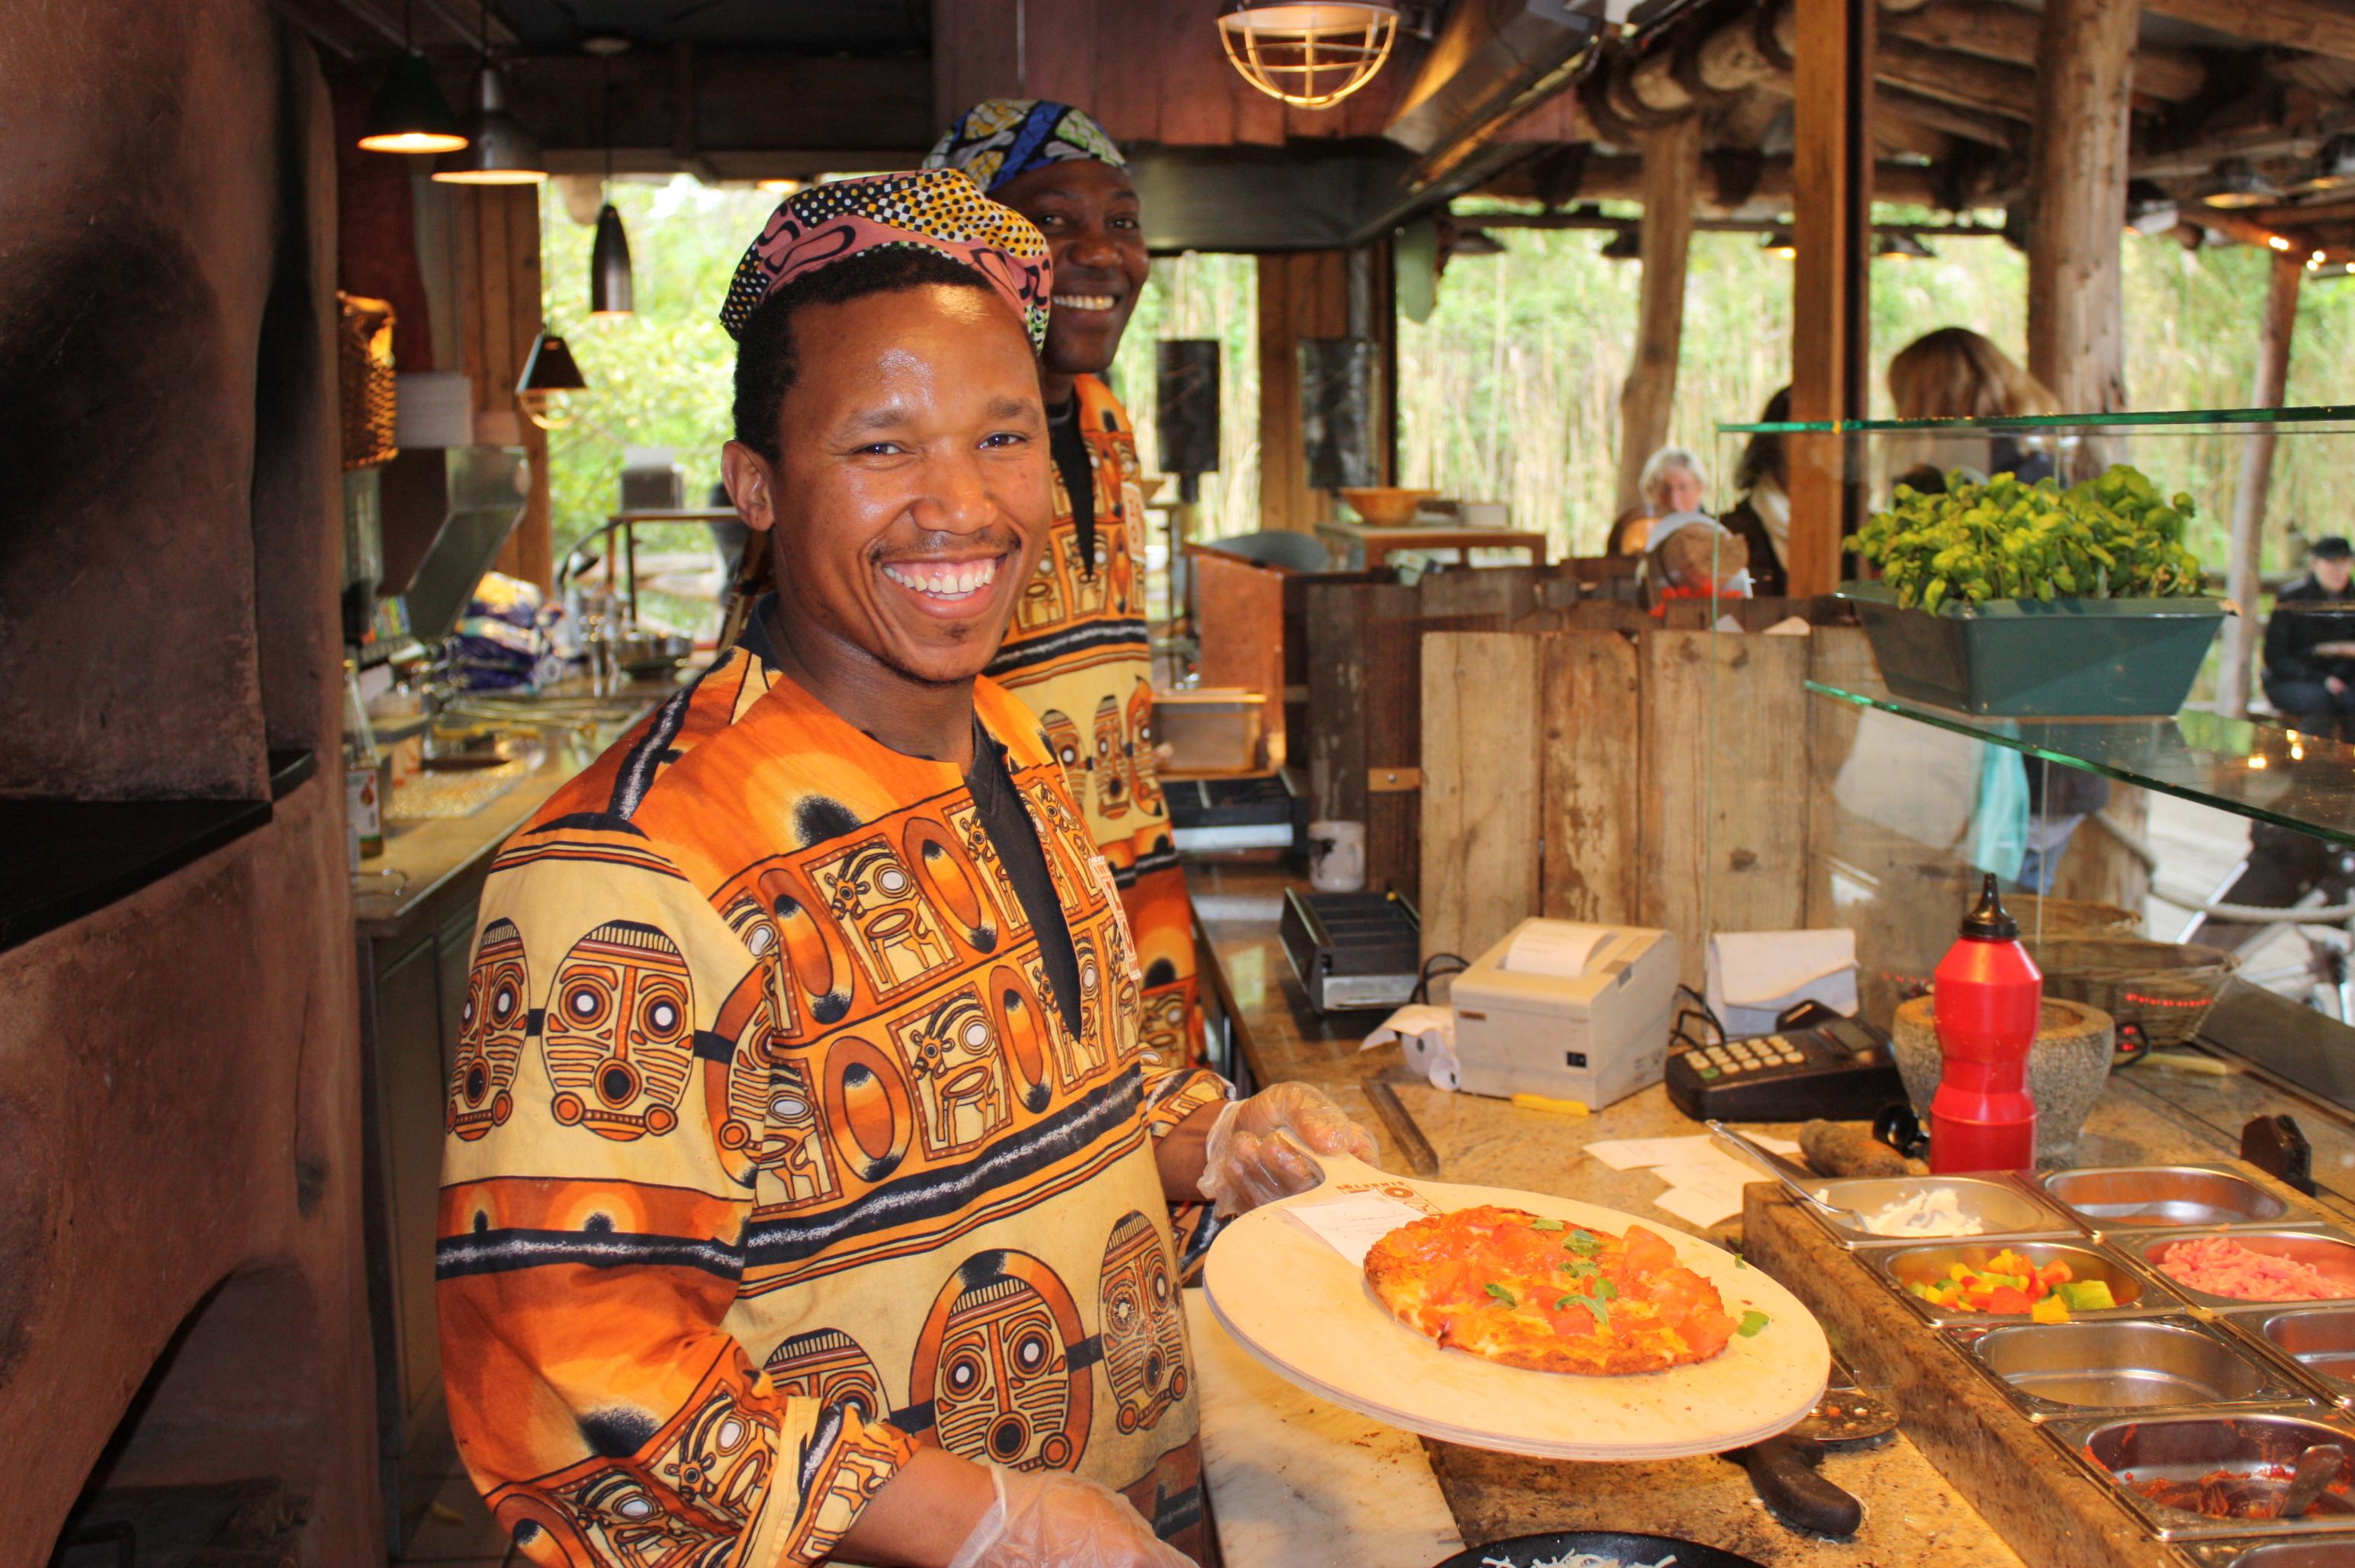 Erfrischung im Café Kifaru: Serviert am Tresen mit Ausblick auf Nashörner